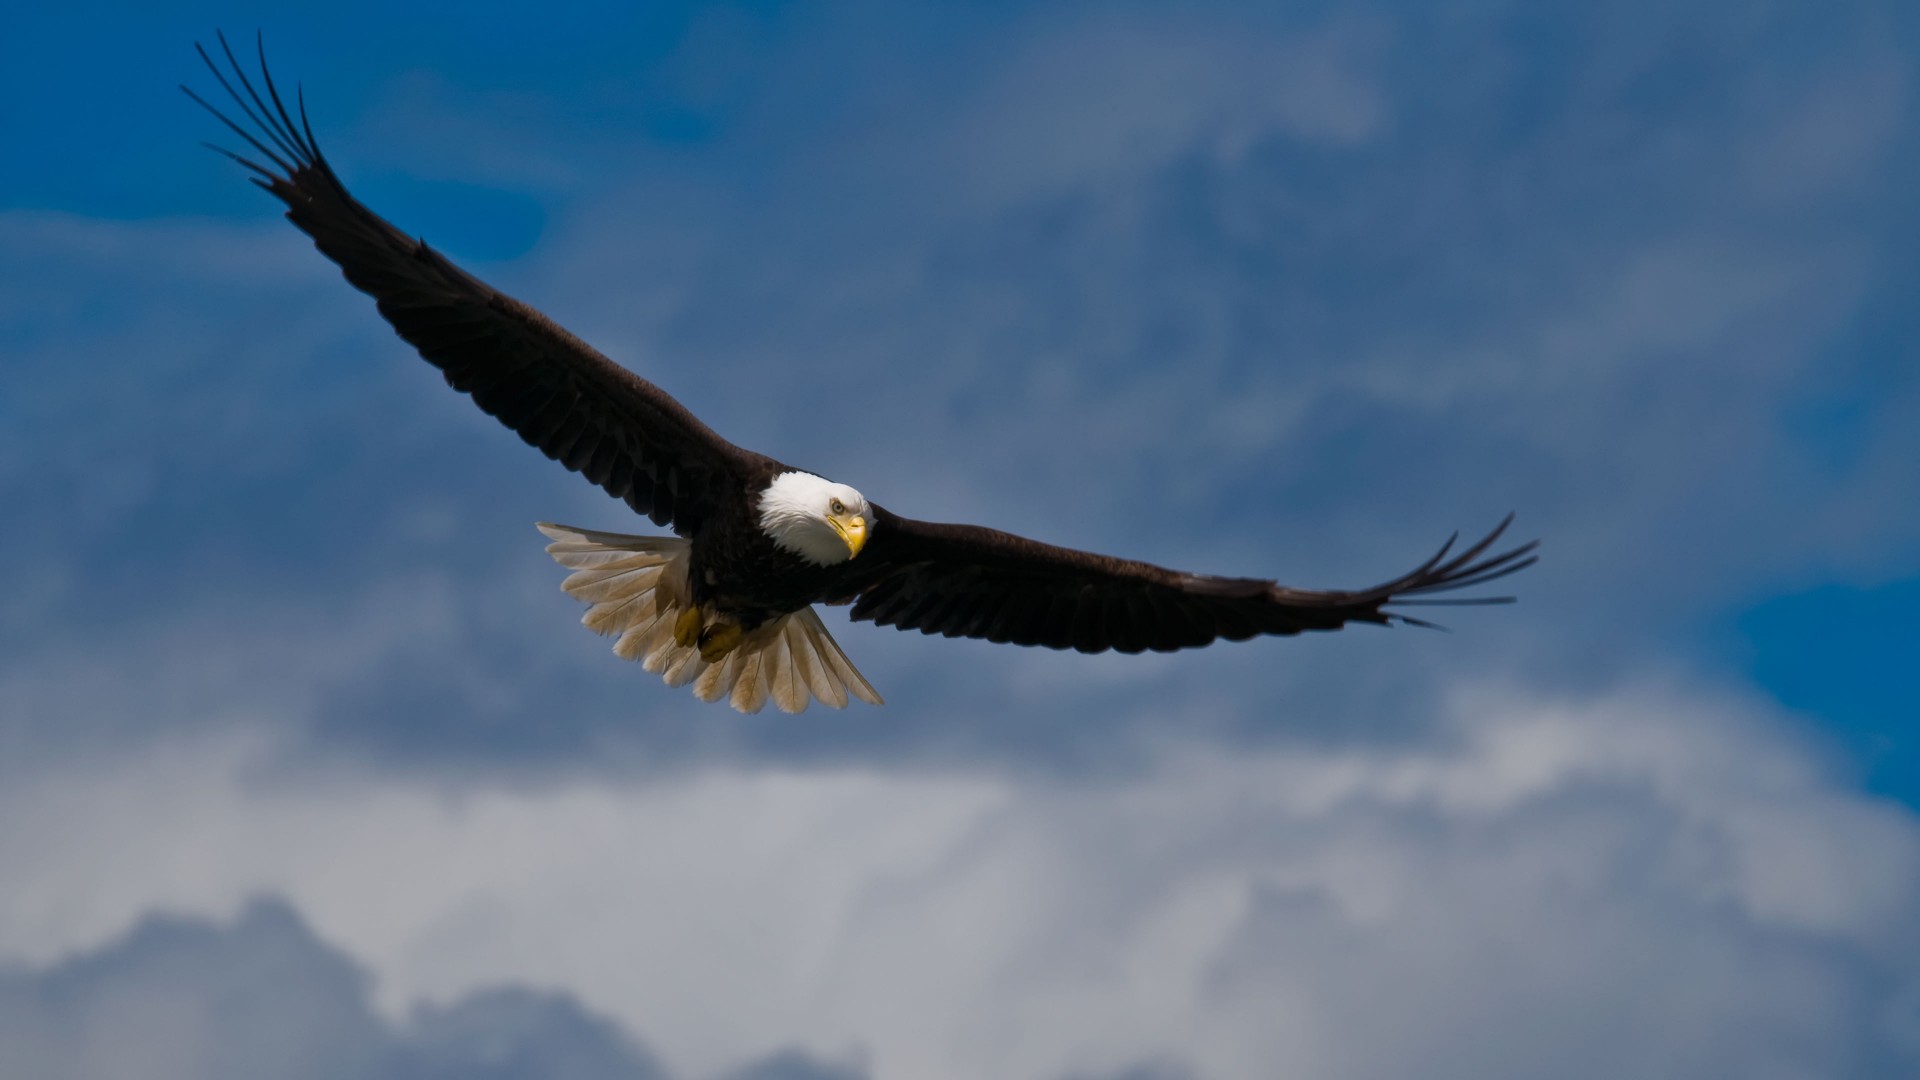 Mobile Desktop Background Hd Bald Eagle Images In Flight